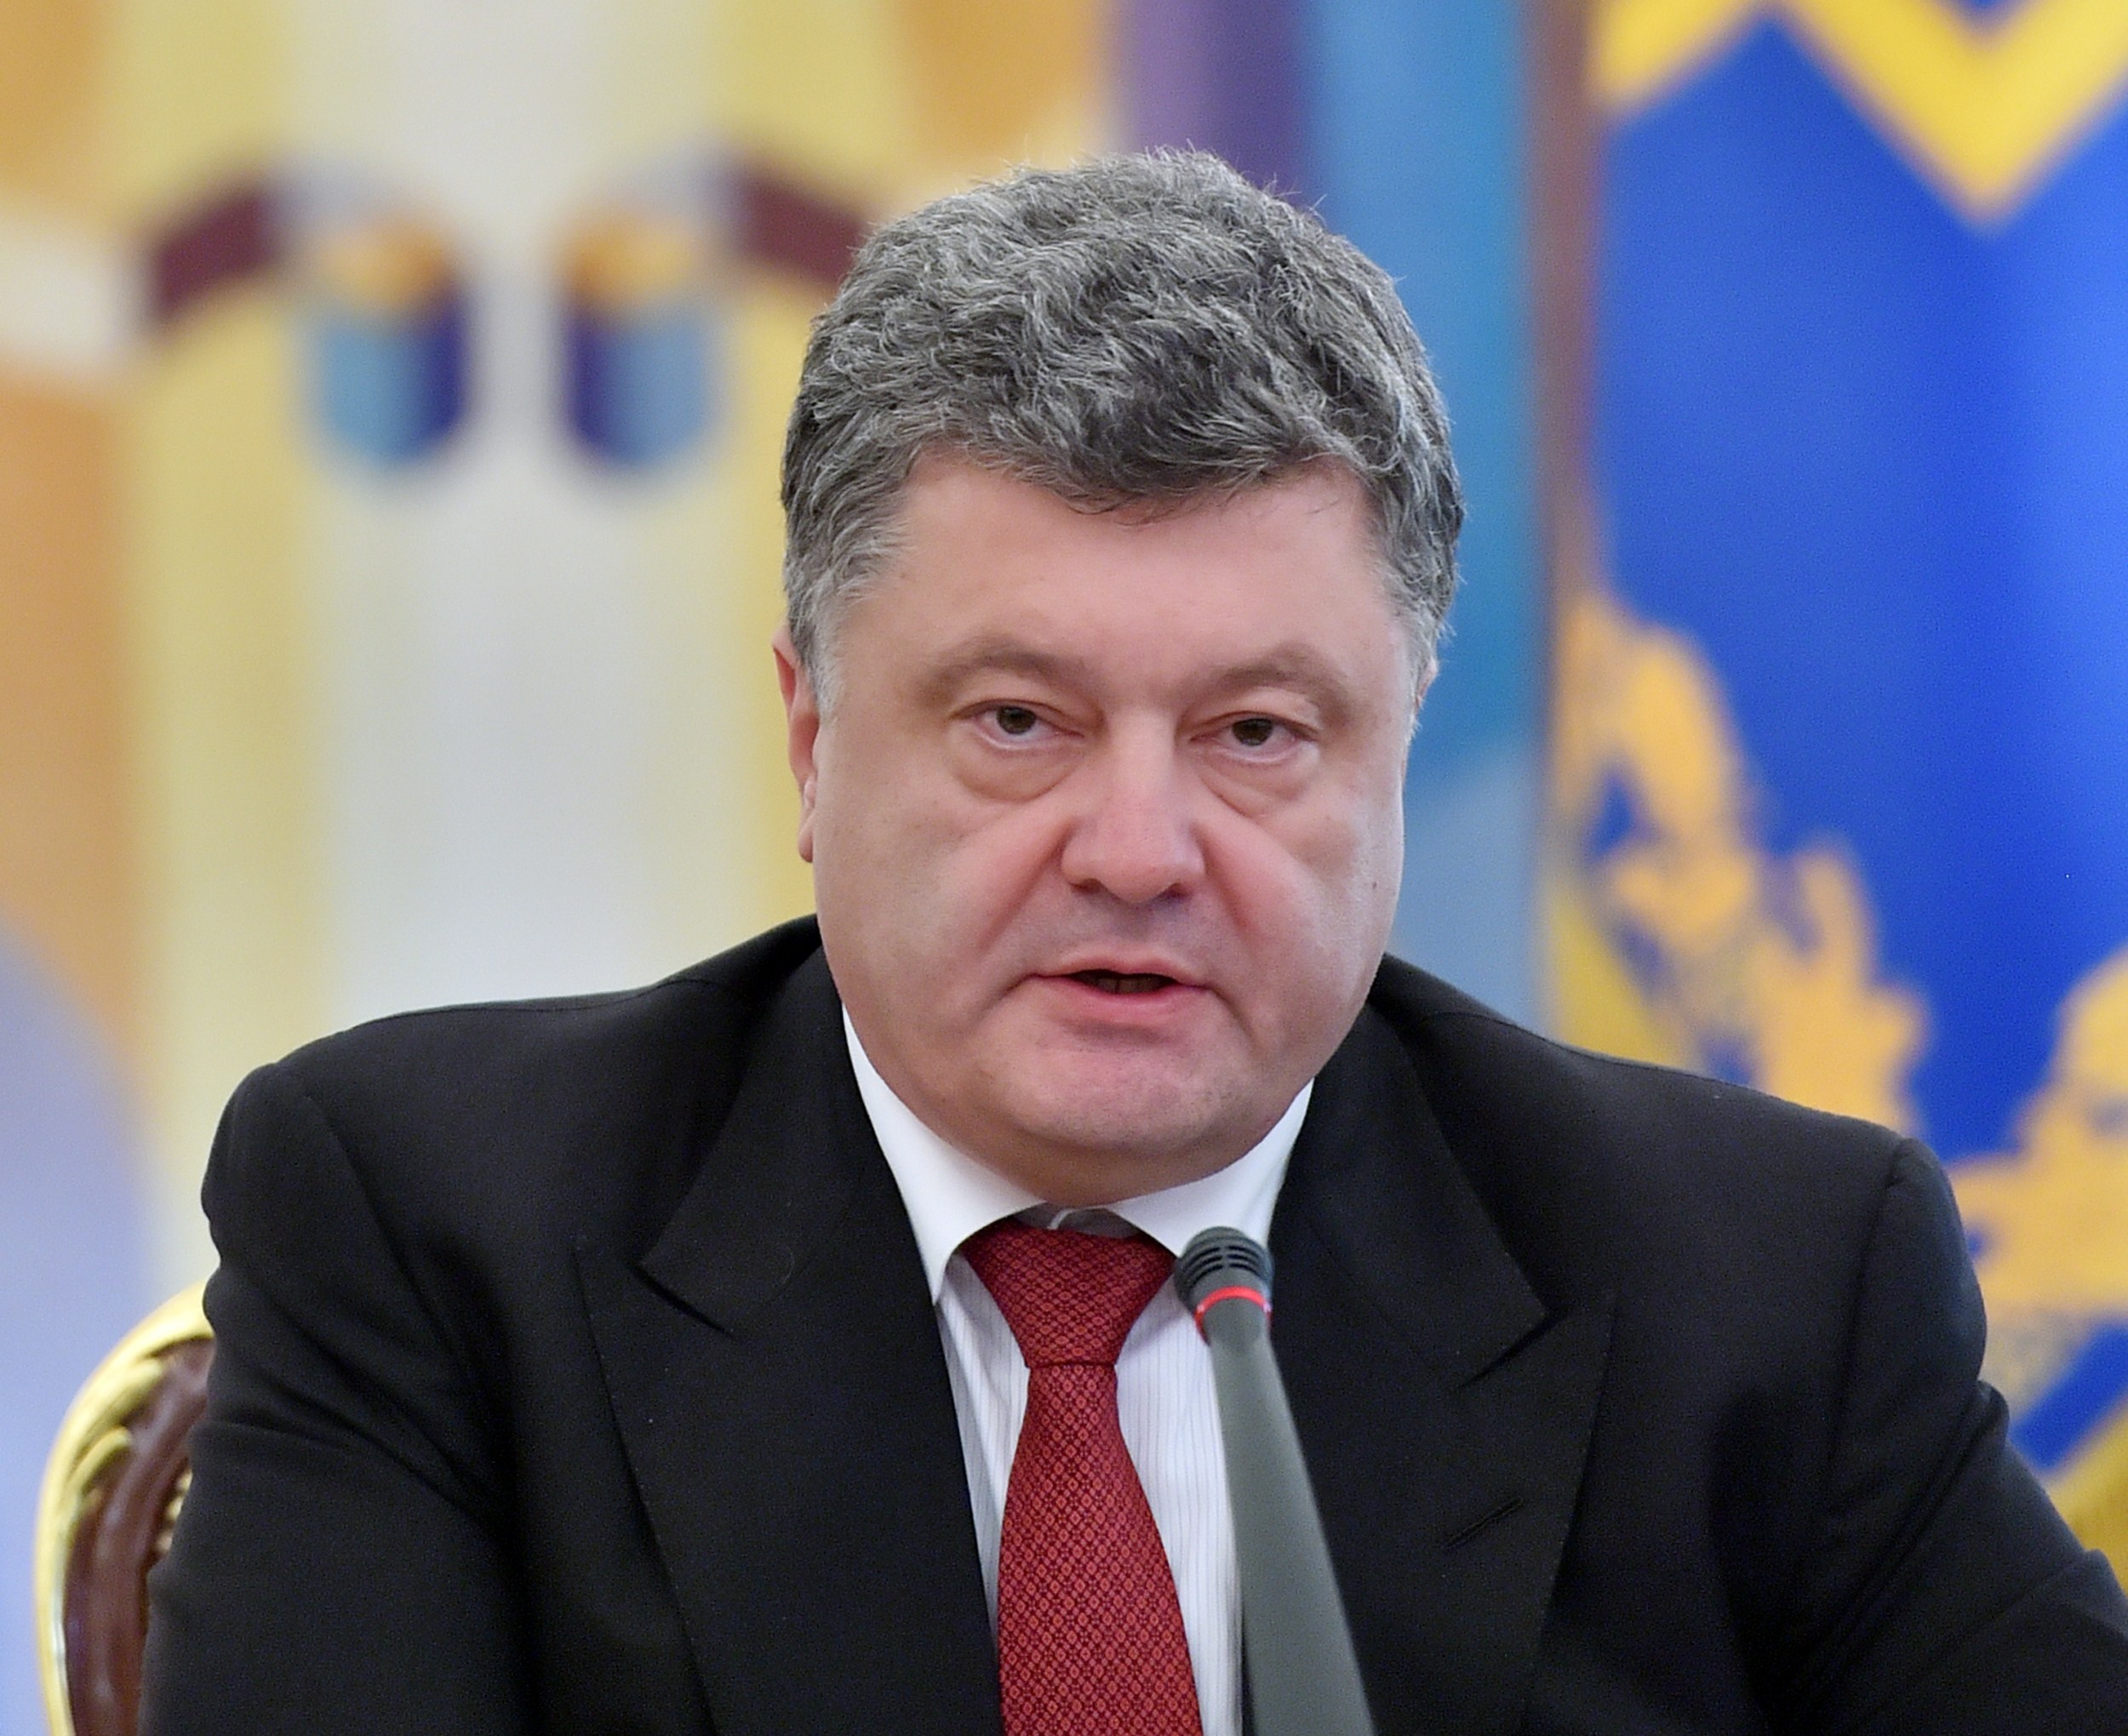 Ukrainischer Präsident fordert Waffenlieferungen gegen „russische Aggressionen“